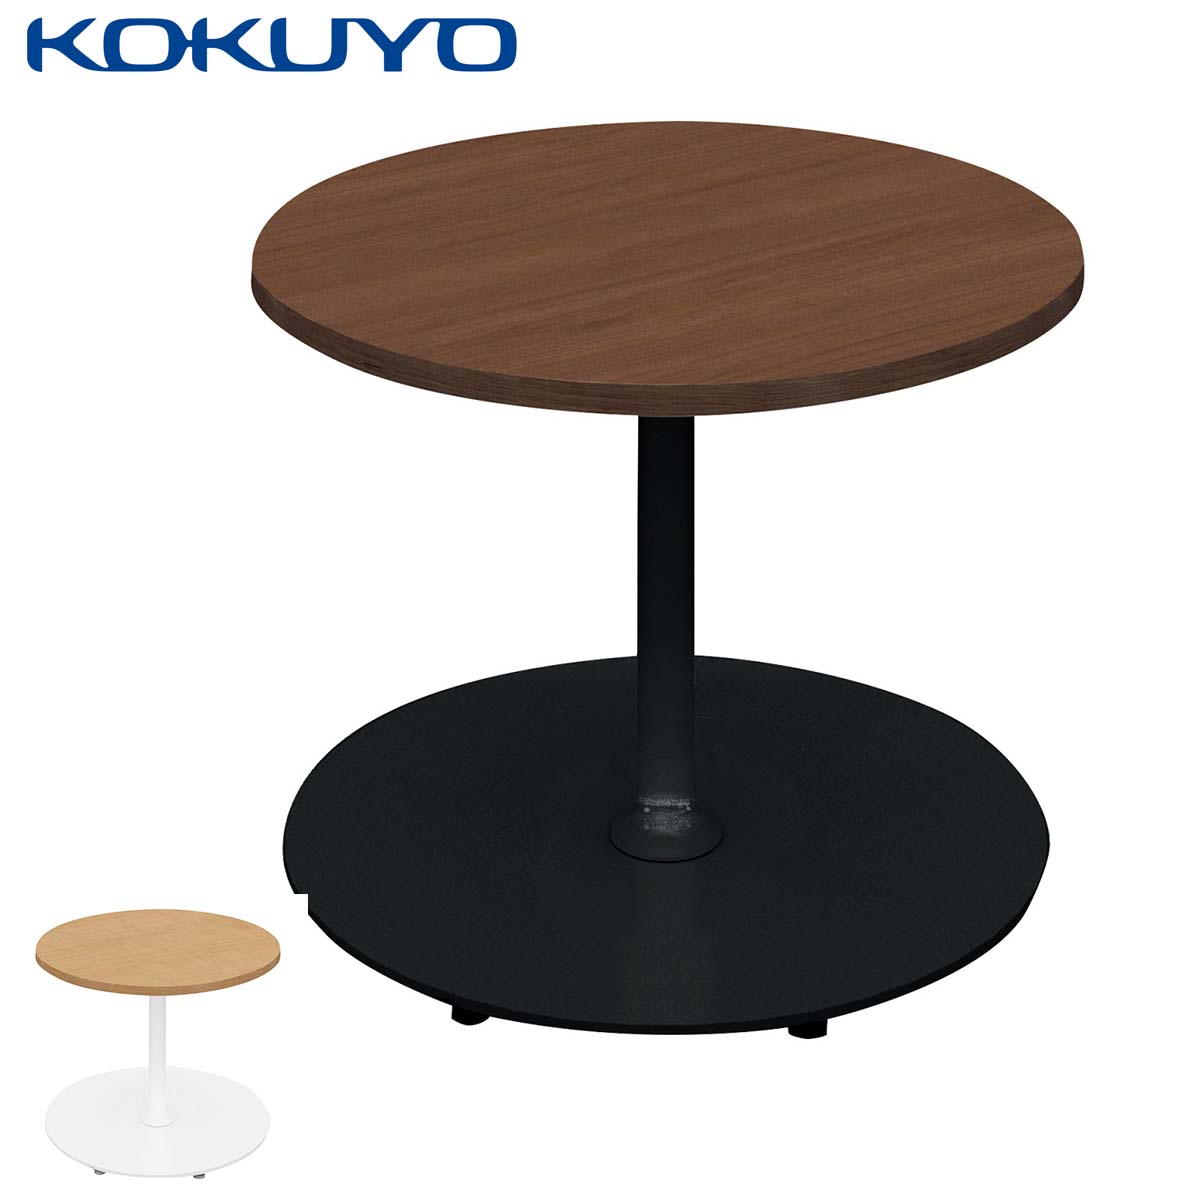 コクヨ ミーティングテーブル テーブル Franka フランカ TFK-SC0707KM 単柱脚テーブル スチール脚 円形 スタンダード天板 W75×D75×H62cm